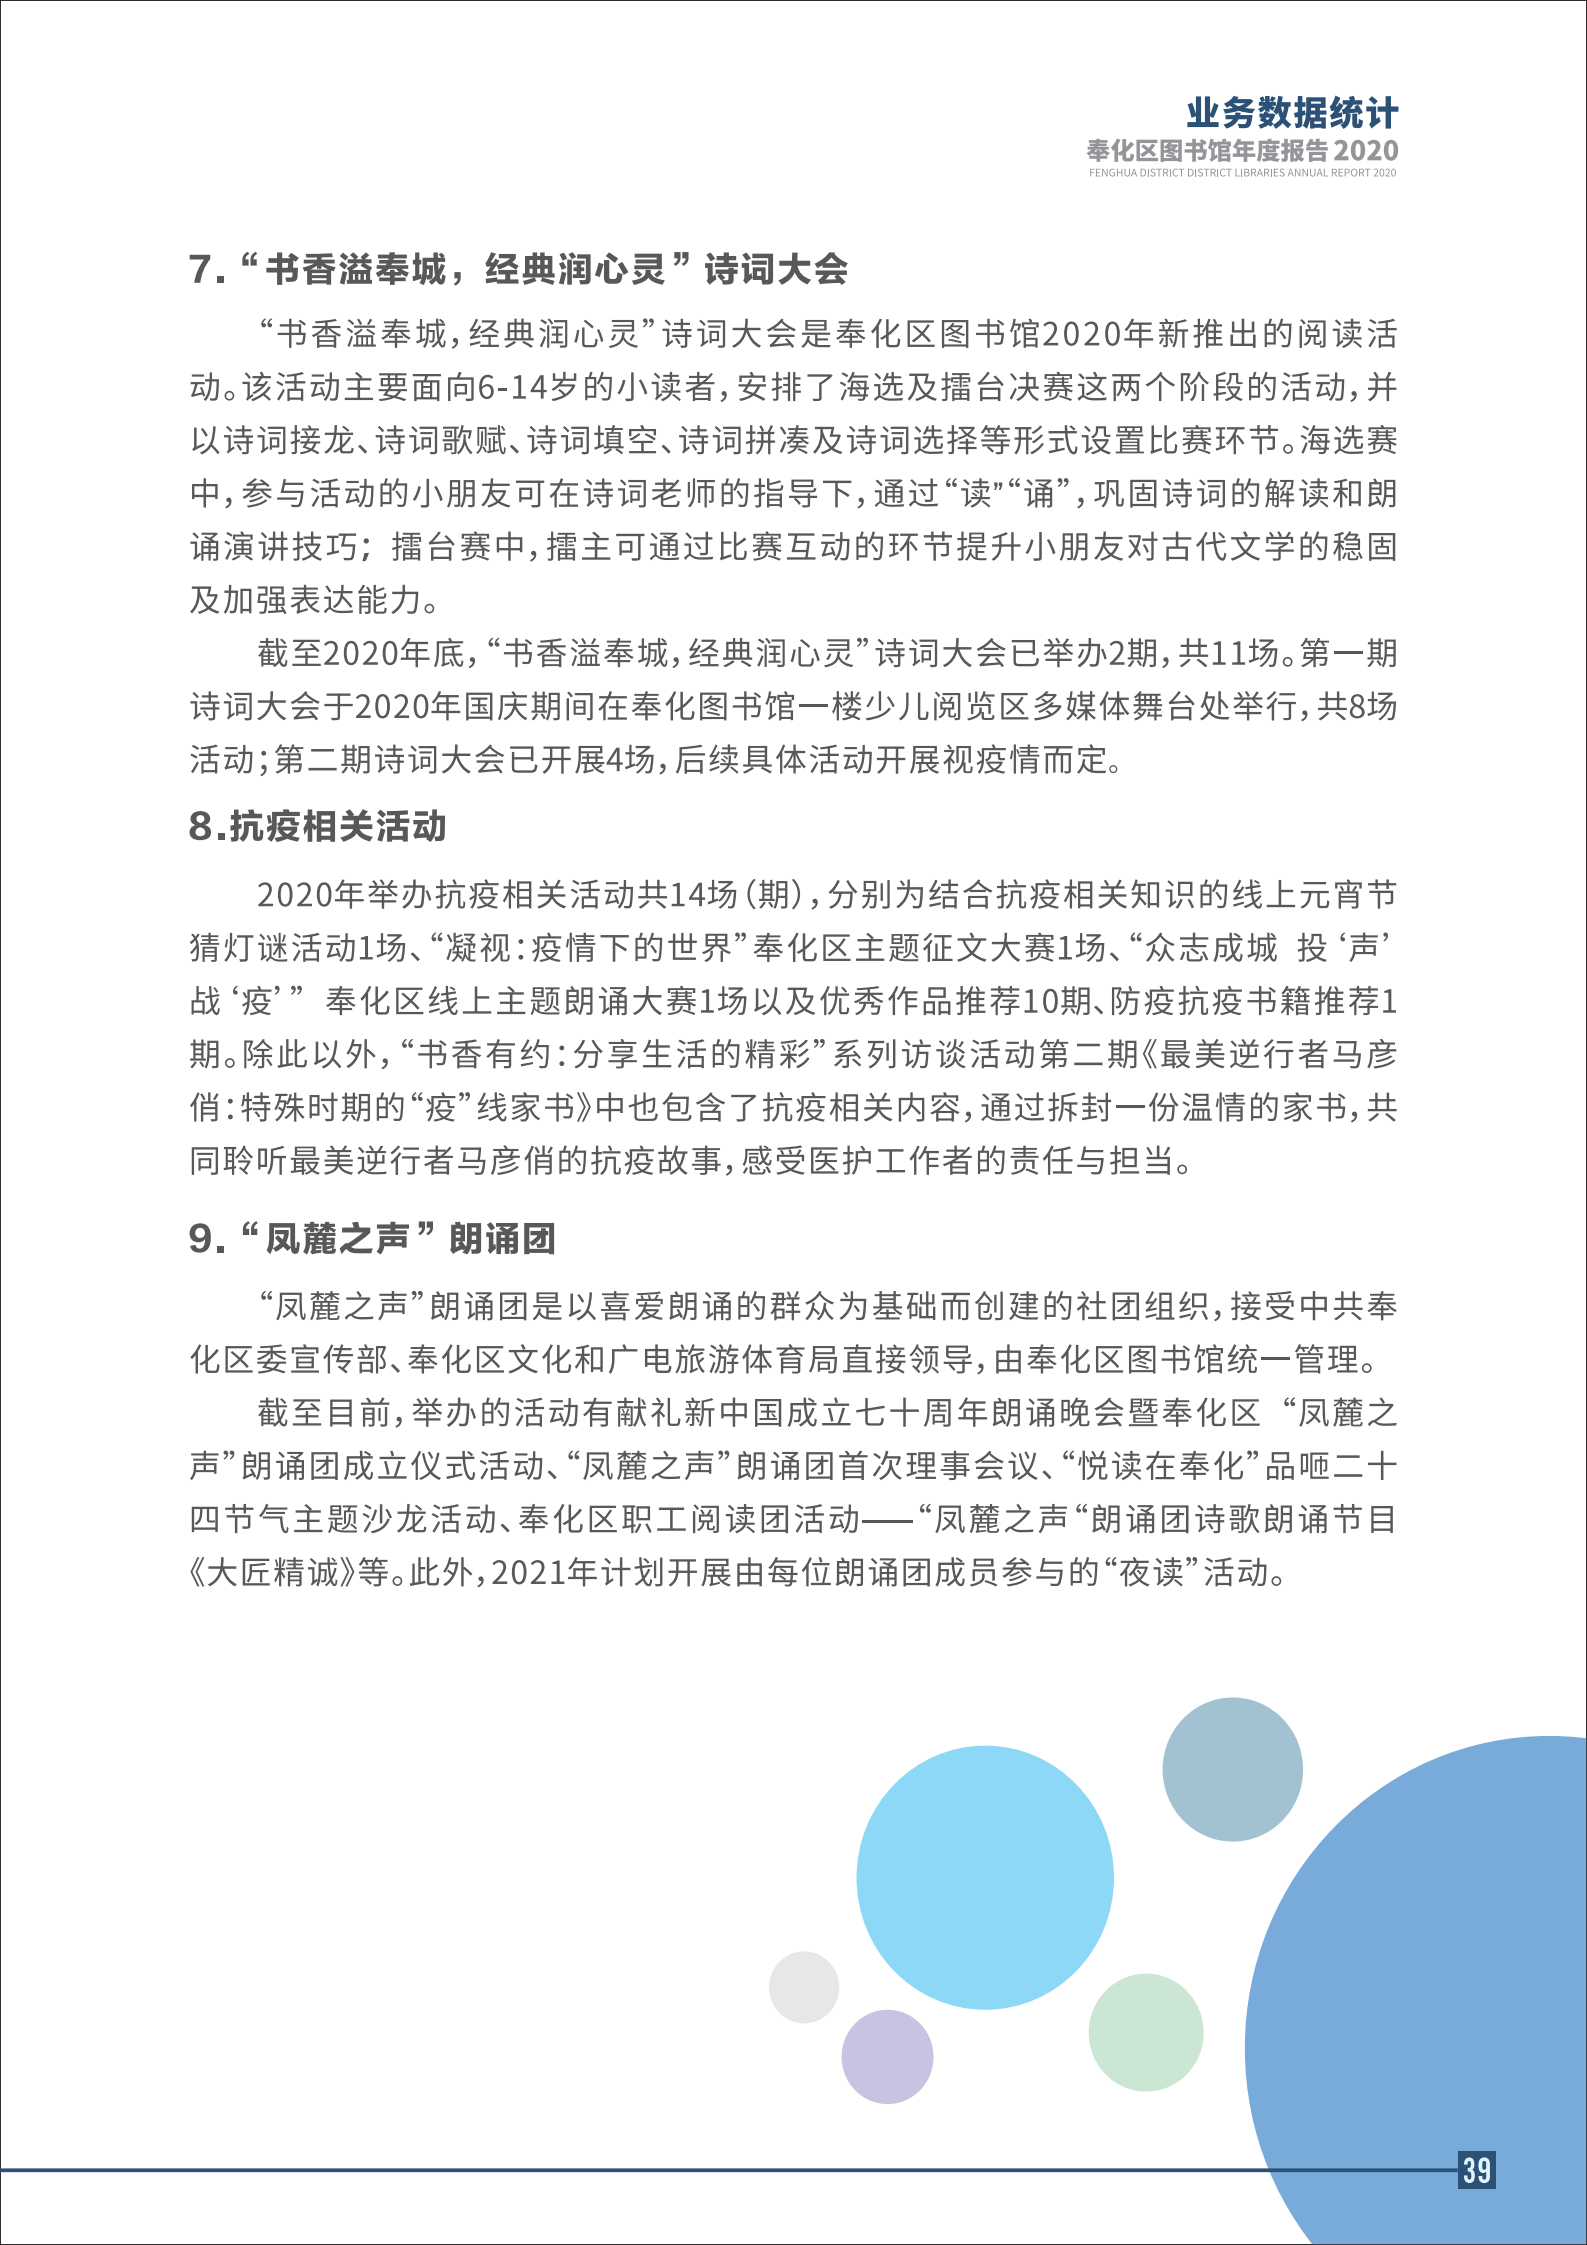 宁波市奉化区图书馆2020年年度报告 终稿_39.png